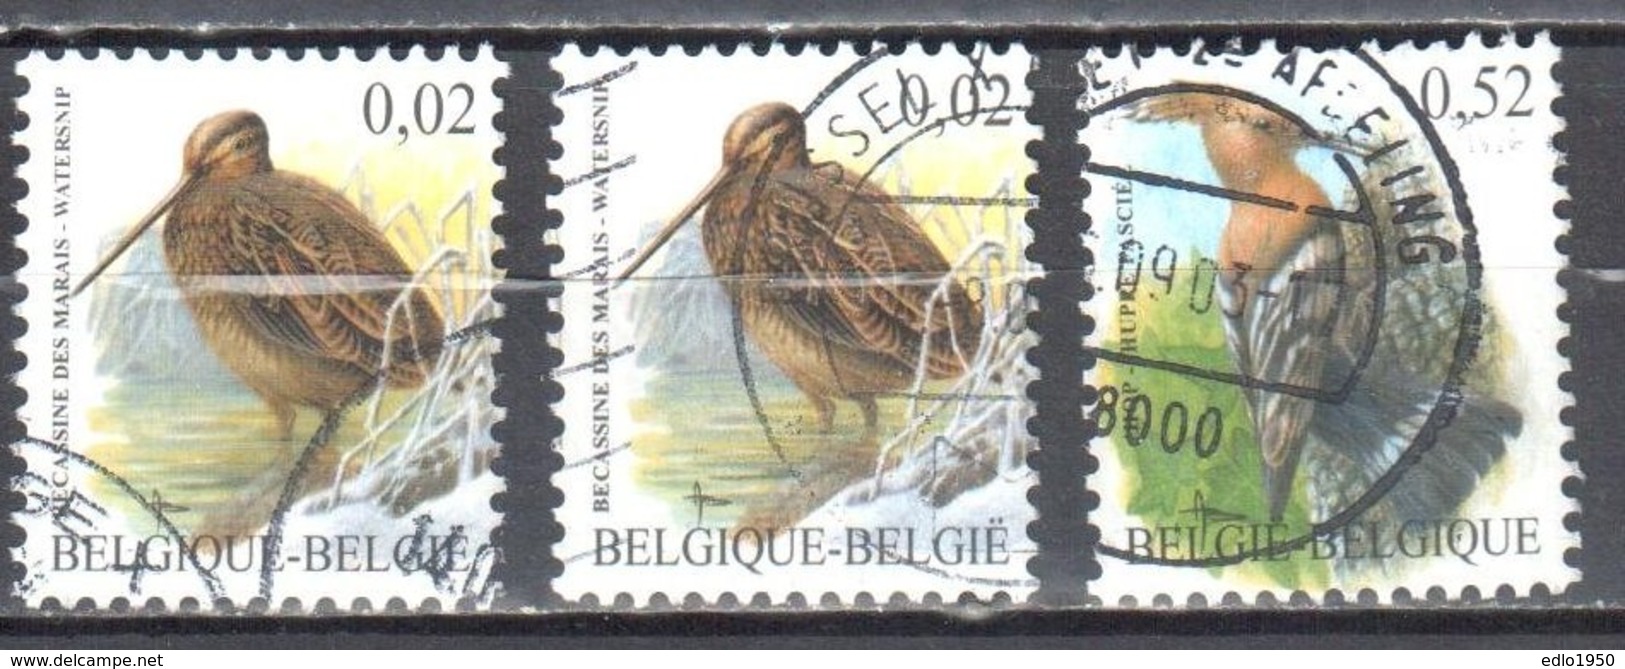 Belgium 2003 - Birds - Mi.3251x,y -52 - Used - Oblitéré - Gebraucht